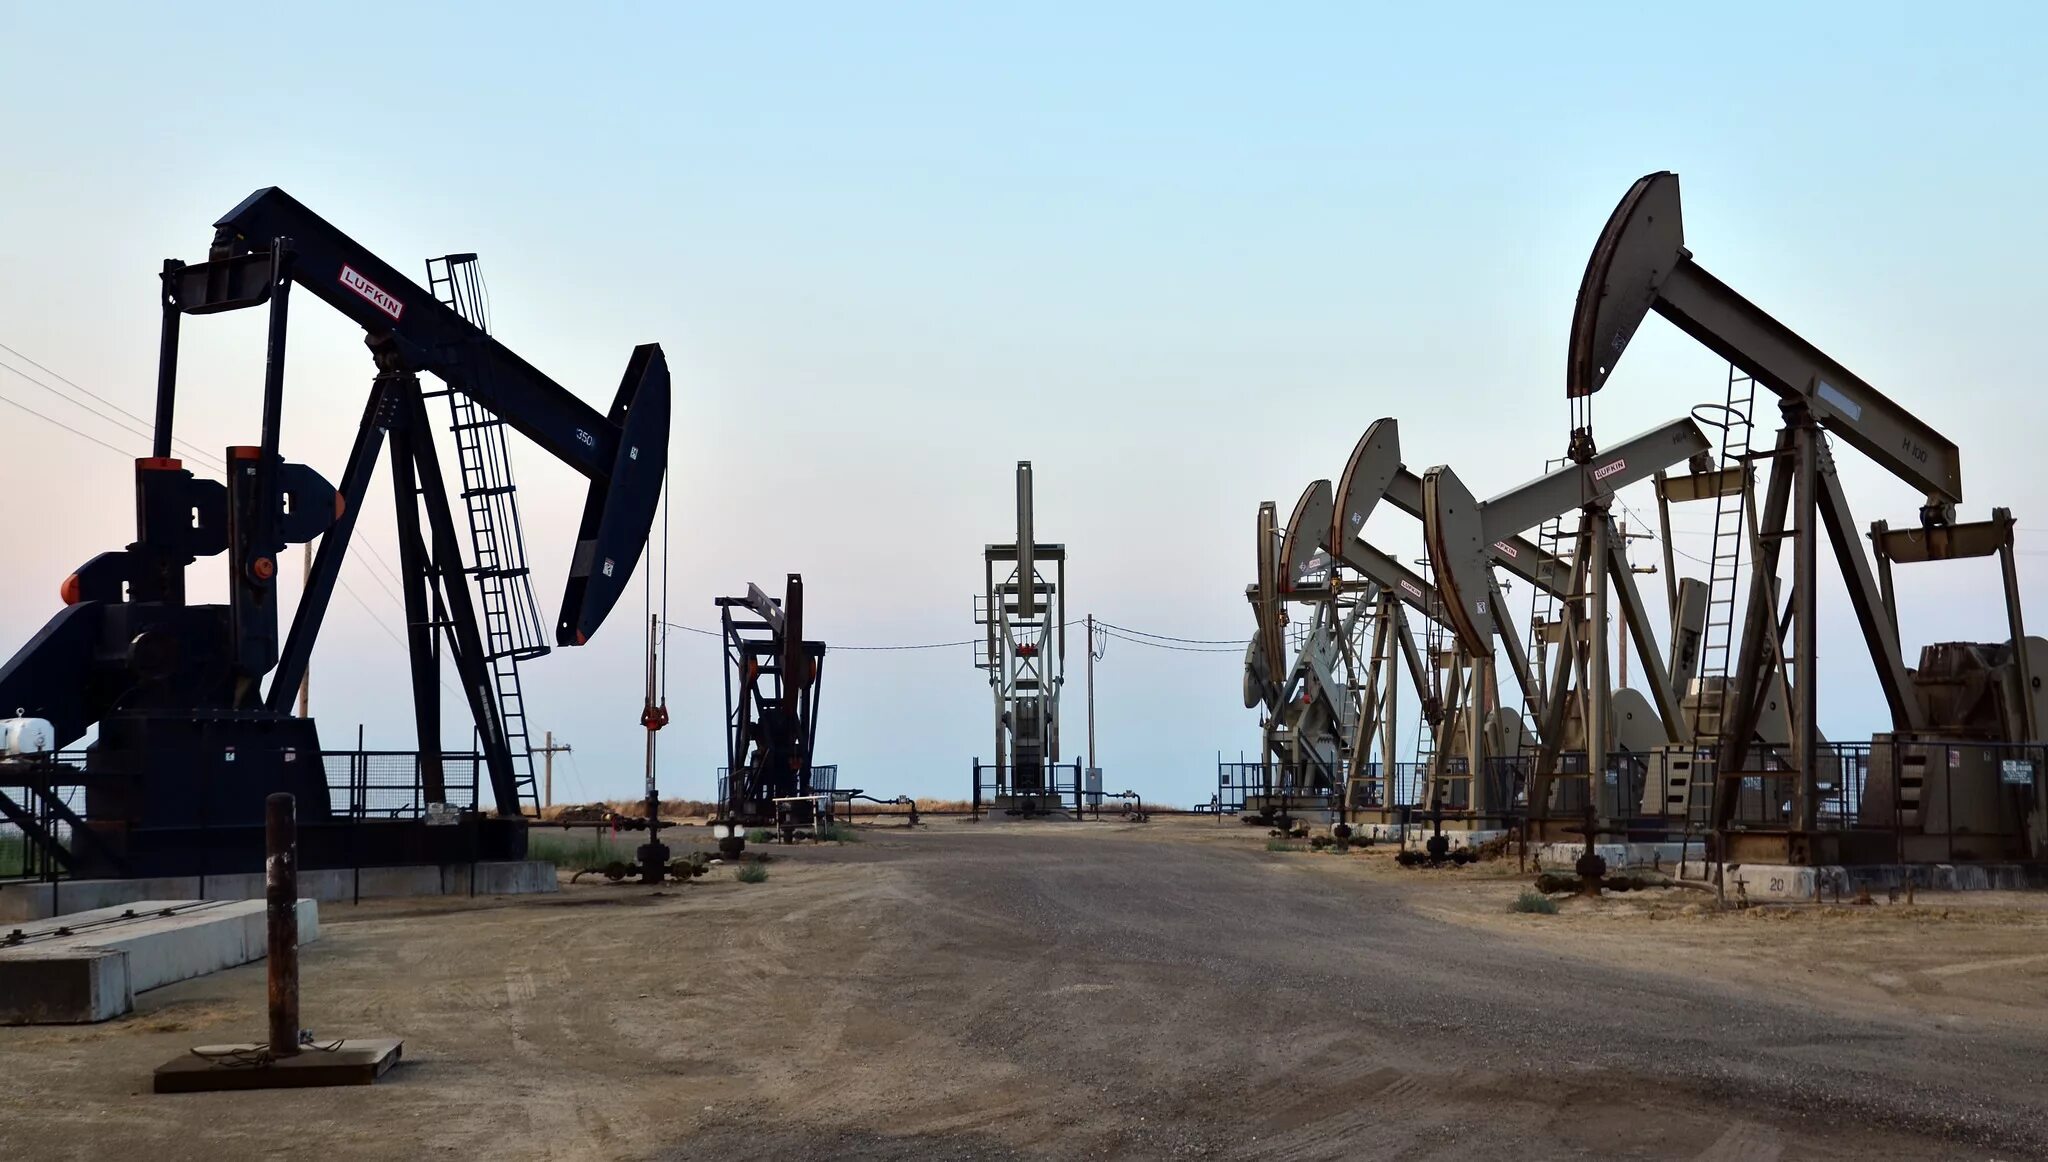 Месторождение углеводородного сырья. Добыча нефти и газа в Калмыкии. Нефтедобыча в Ингушетии. Добыча углеводородов. Нефтяная промышленность.